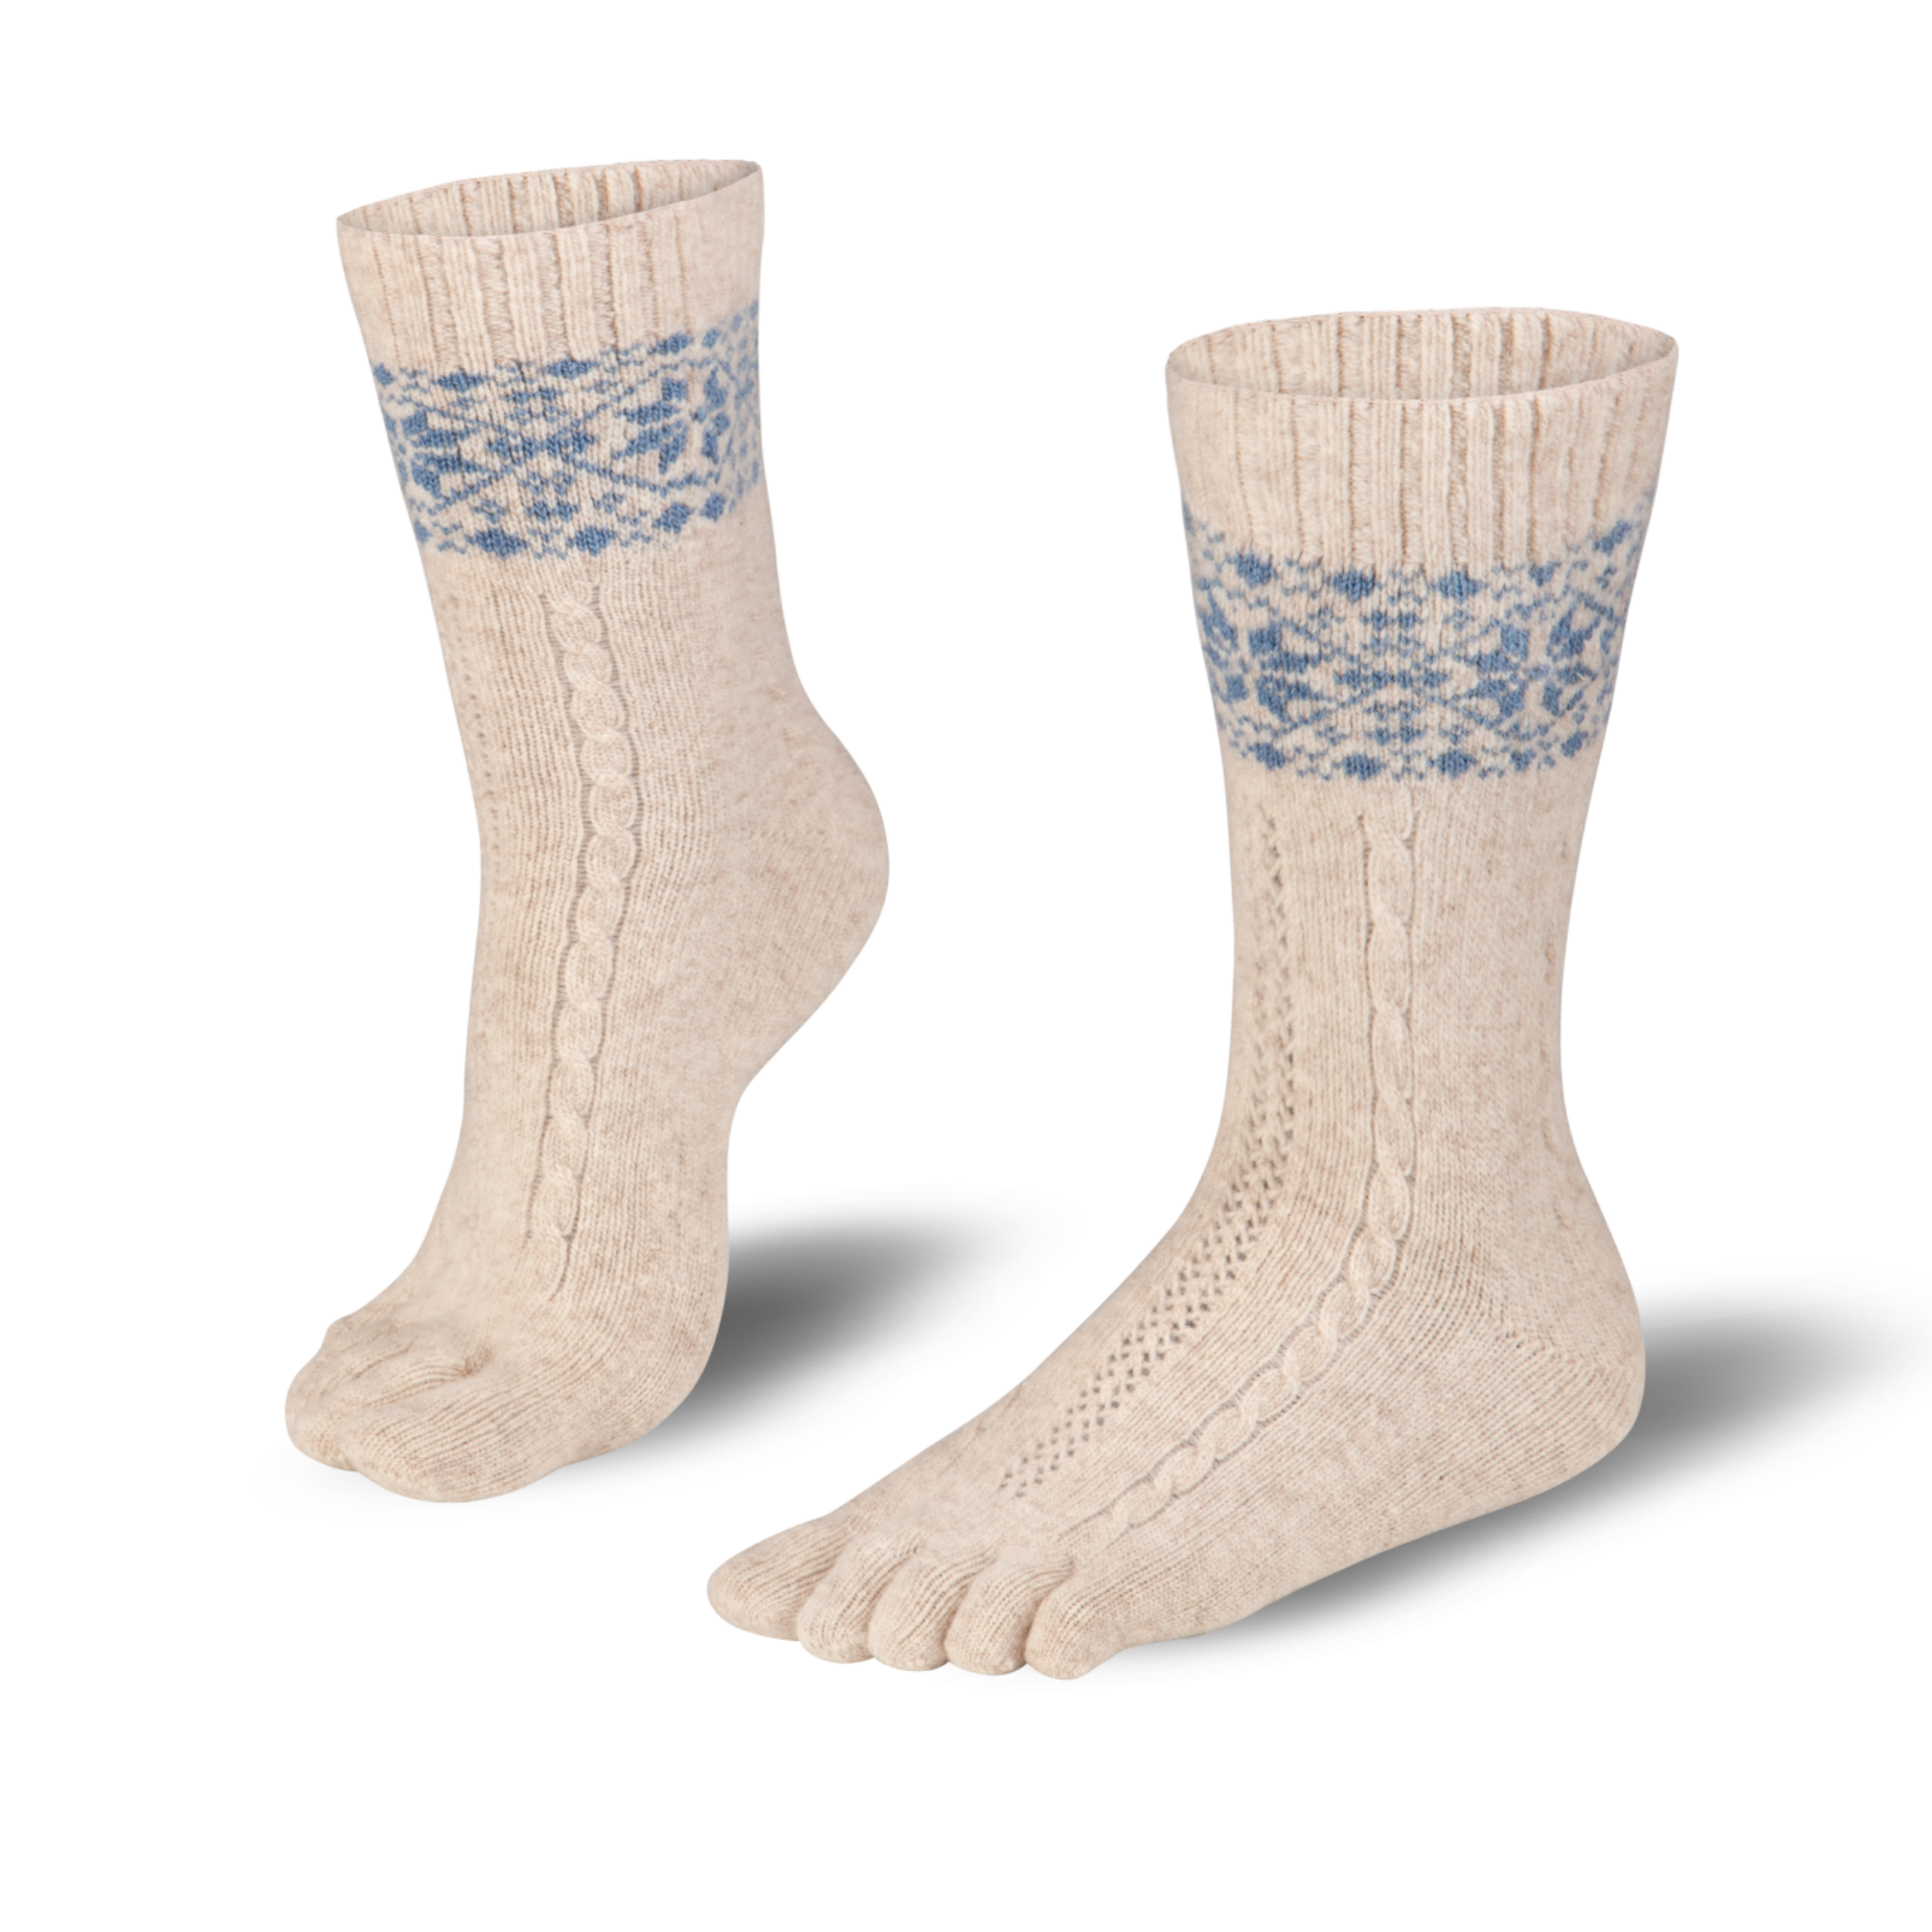  Knitido warme Zehensocken aus Merino & Kaschmir mit Schneeflecken Muster in beige/hellblau